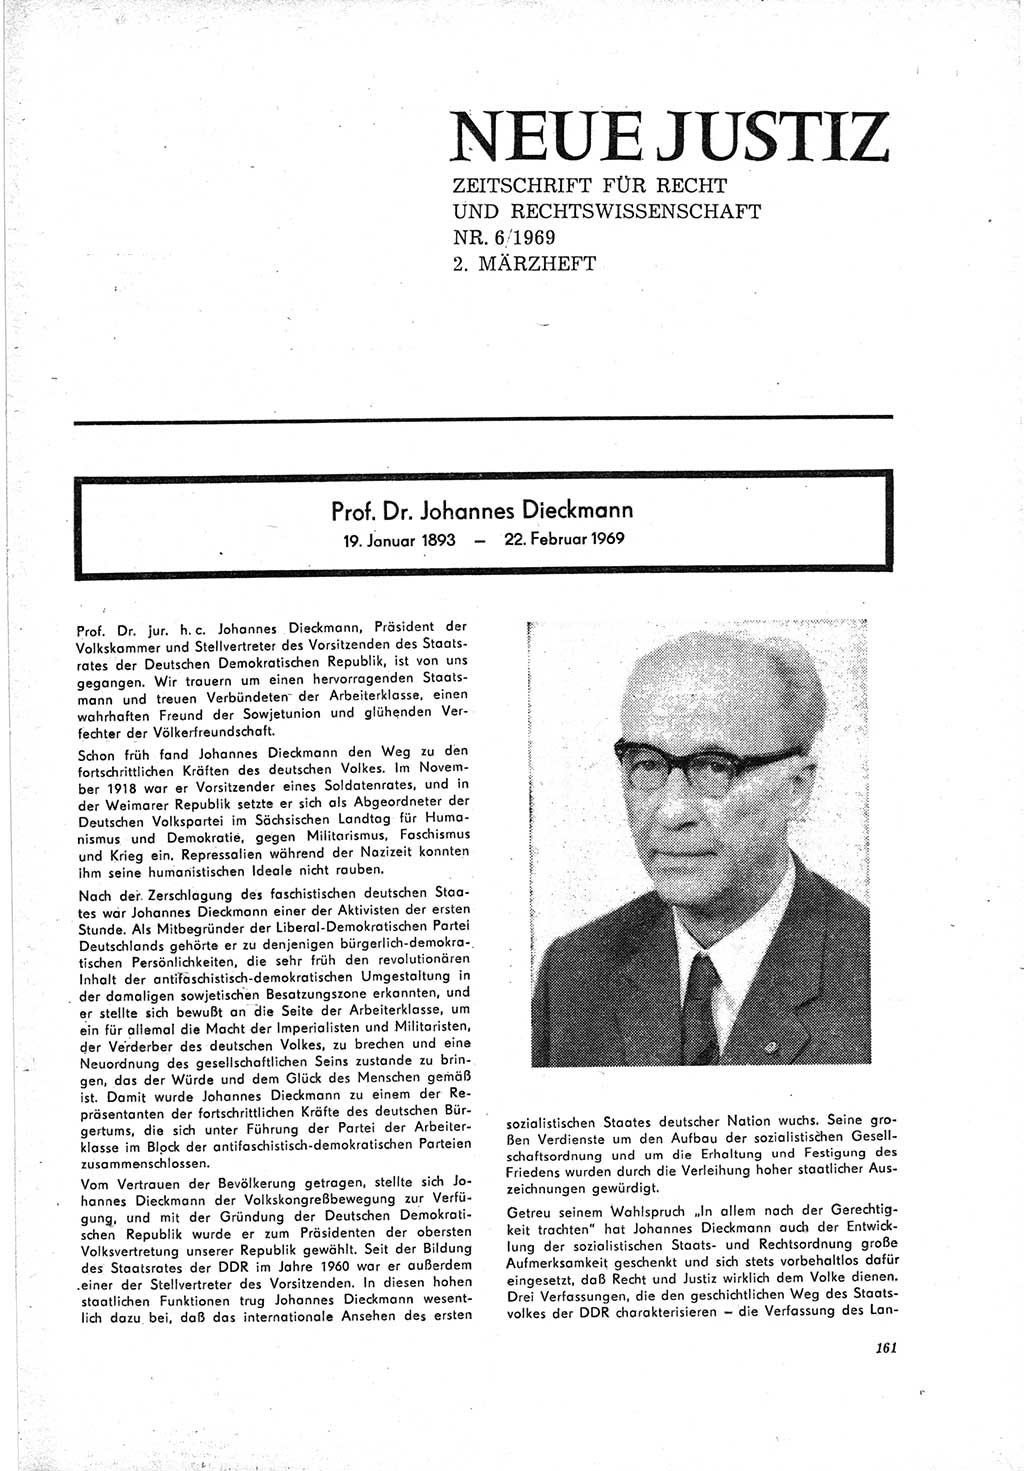 Neue Justiz (NJ), Zeitschrift für Recht und Rechtswissenschaft [Deutsche Demokratische Republik (DDR)], 23. Jahrgang 1969, Seite 161 (NJ DDR 1969, S. 161)